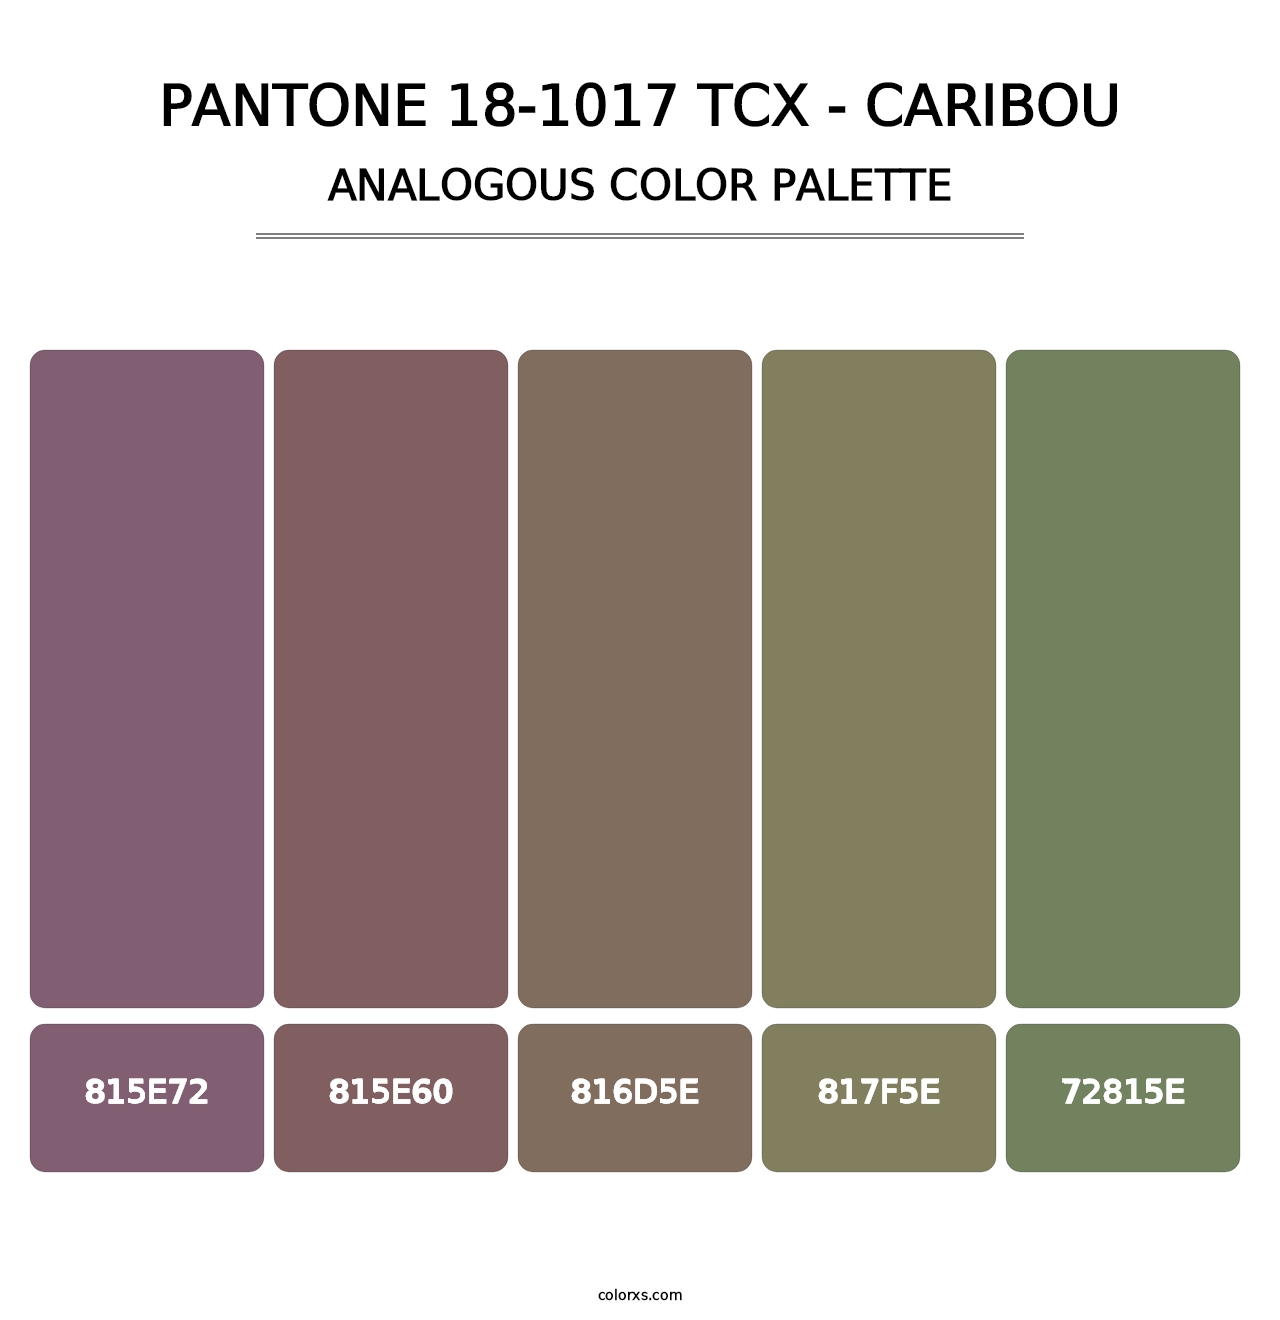 PANTONE 18-1017 TCX - Caribou - Analogous Color Palette